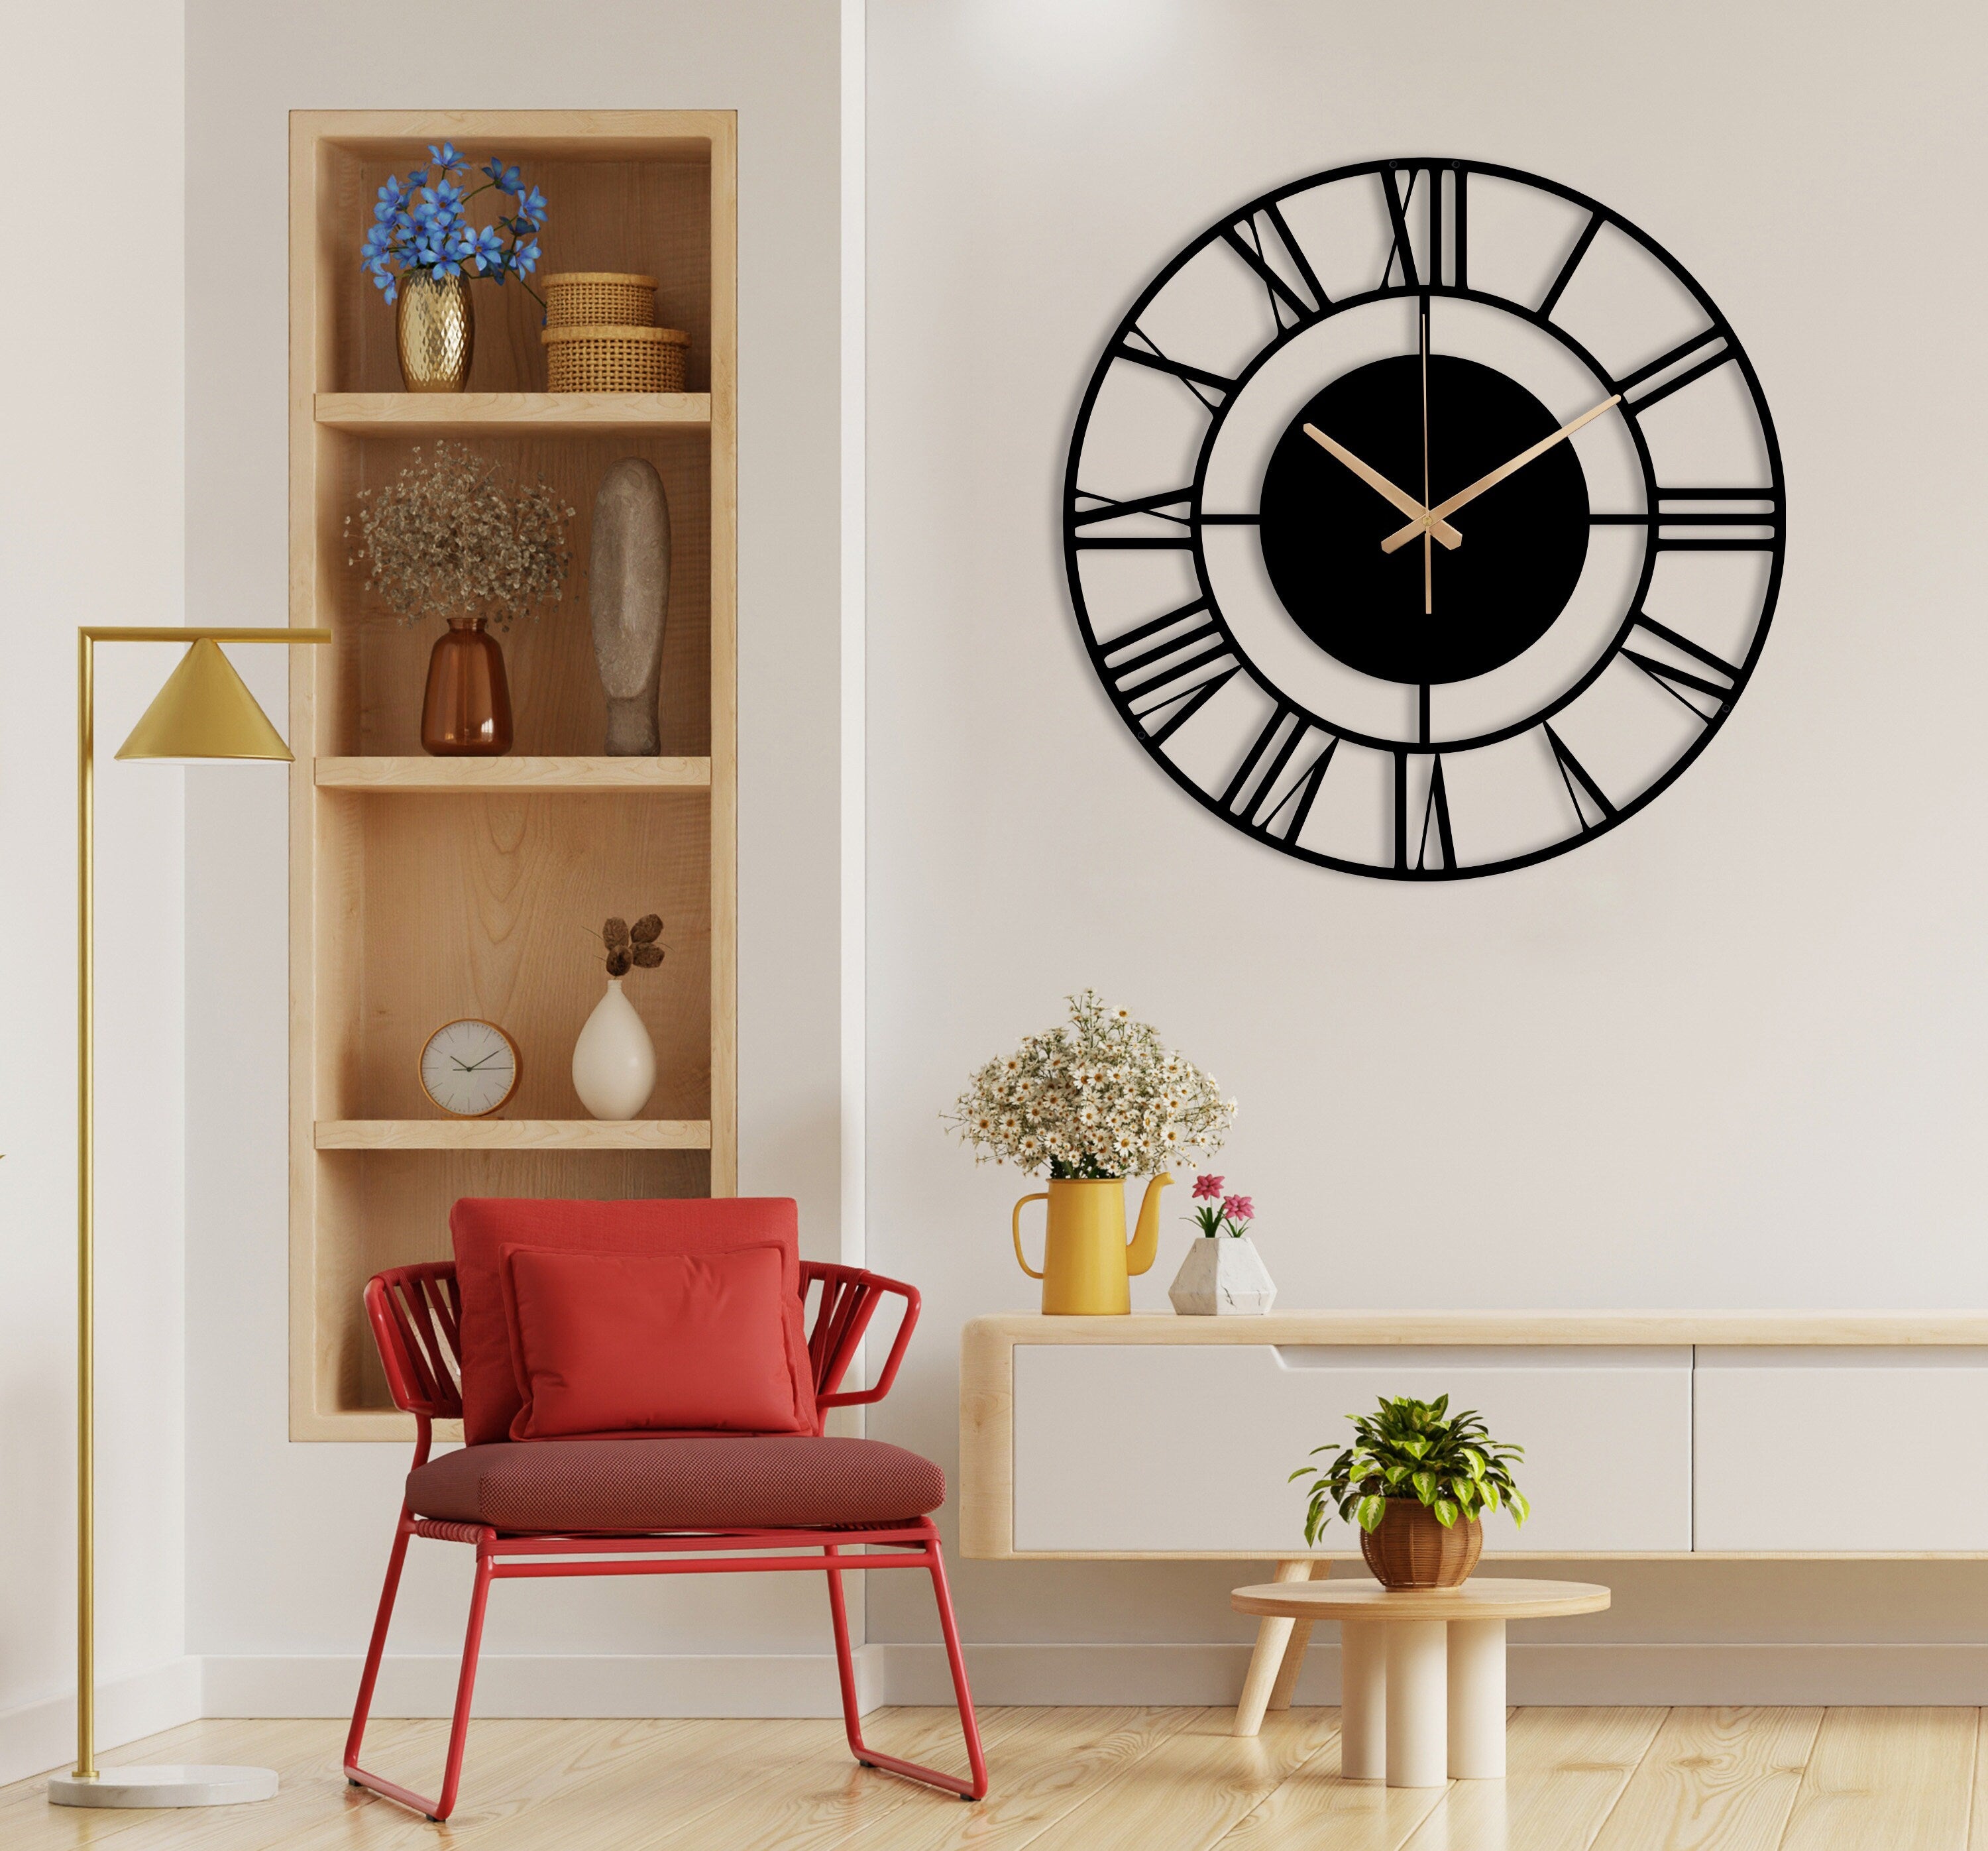 Unique Wall Clock, Silent Wall Clock, Small Metal Wall Clock, Black Wall Clock, Oversized Wall Clock, Retro Wall Clock, Laser Cut Clock